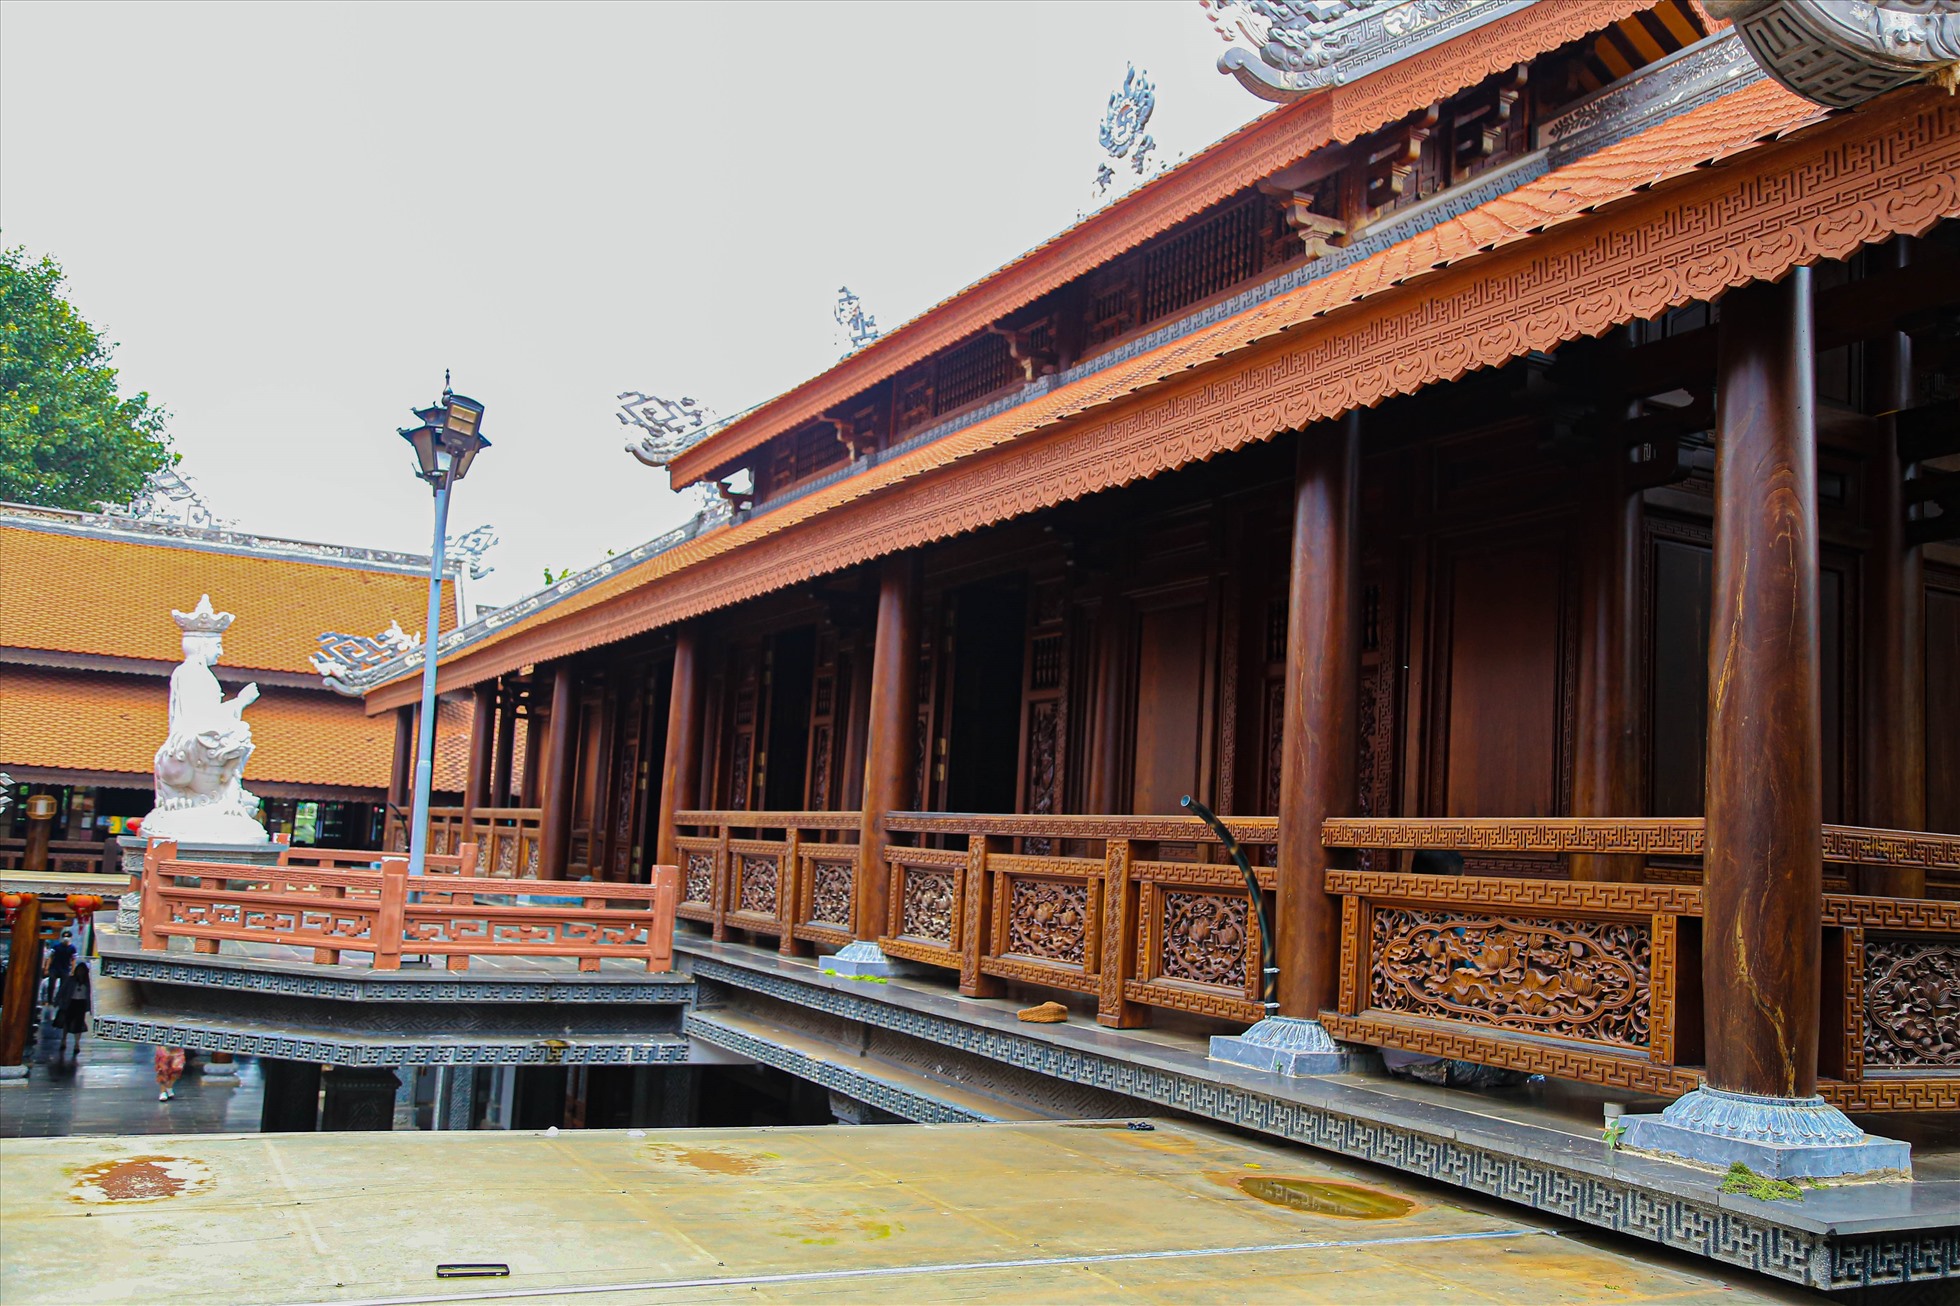 Phía sau chánh điện là nhà hậu tổ, nơi để di ảnh những vị hòa thượng trụ trì cũng như những vị cao tăng có nhiều đóng góp cho Phật giáo ở Tây Nguyên.